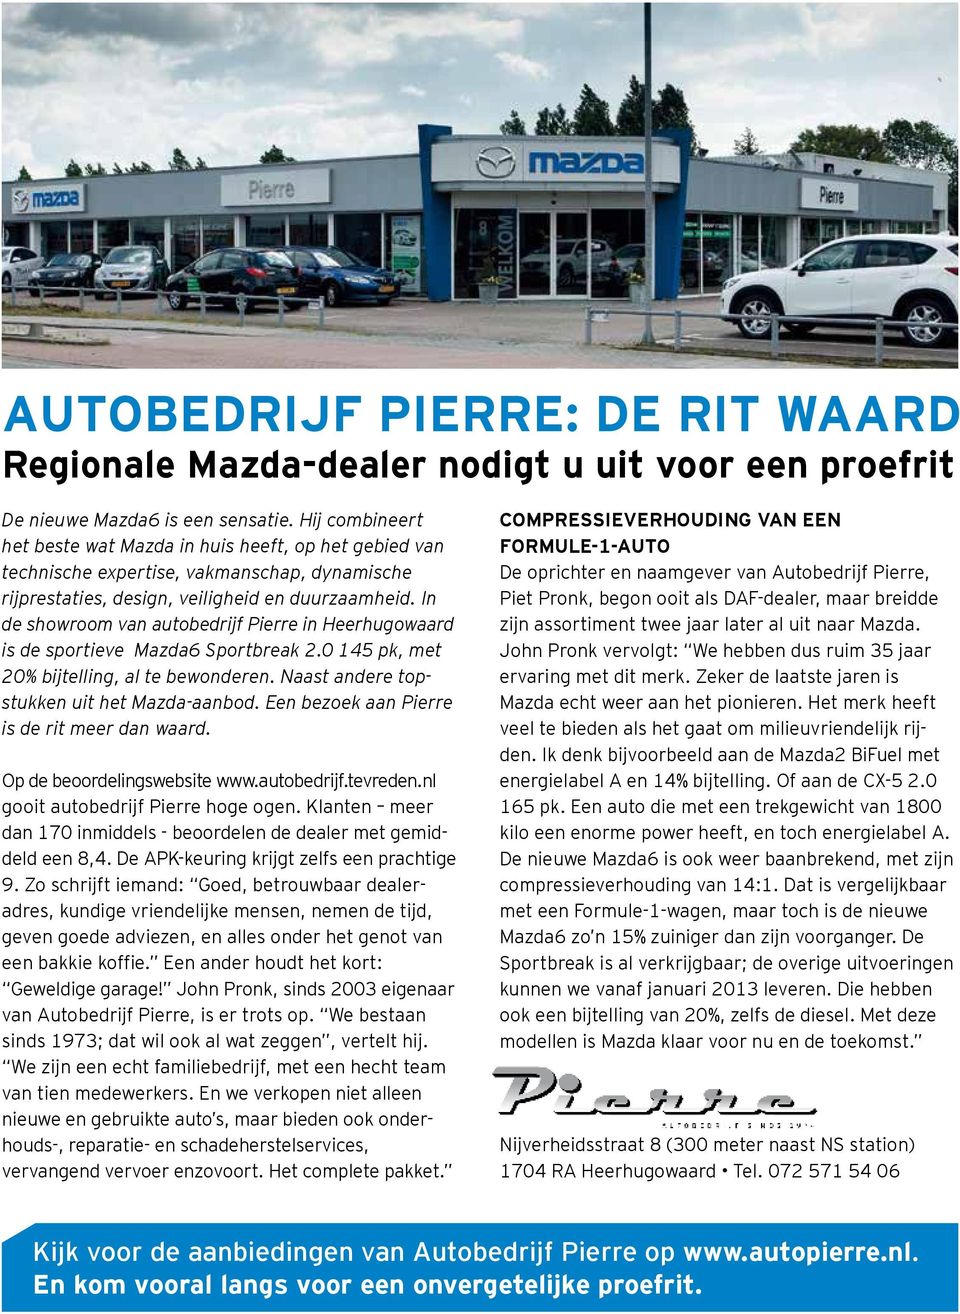 In de showroom van autobedrijf Pierre in Heerhugowaard is de sportieve Mazda6 Sportbreak 2.0 145 pk, met 20% bijtelling, al te bewonderen. Naast andere topstukken uit het Mazda-aanbod.